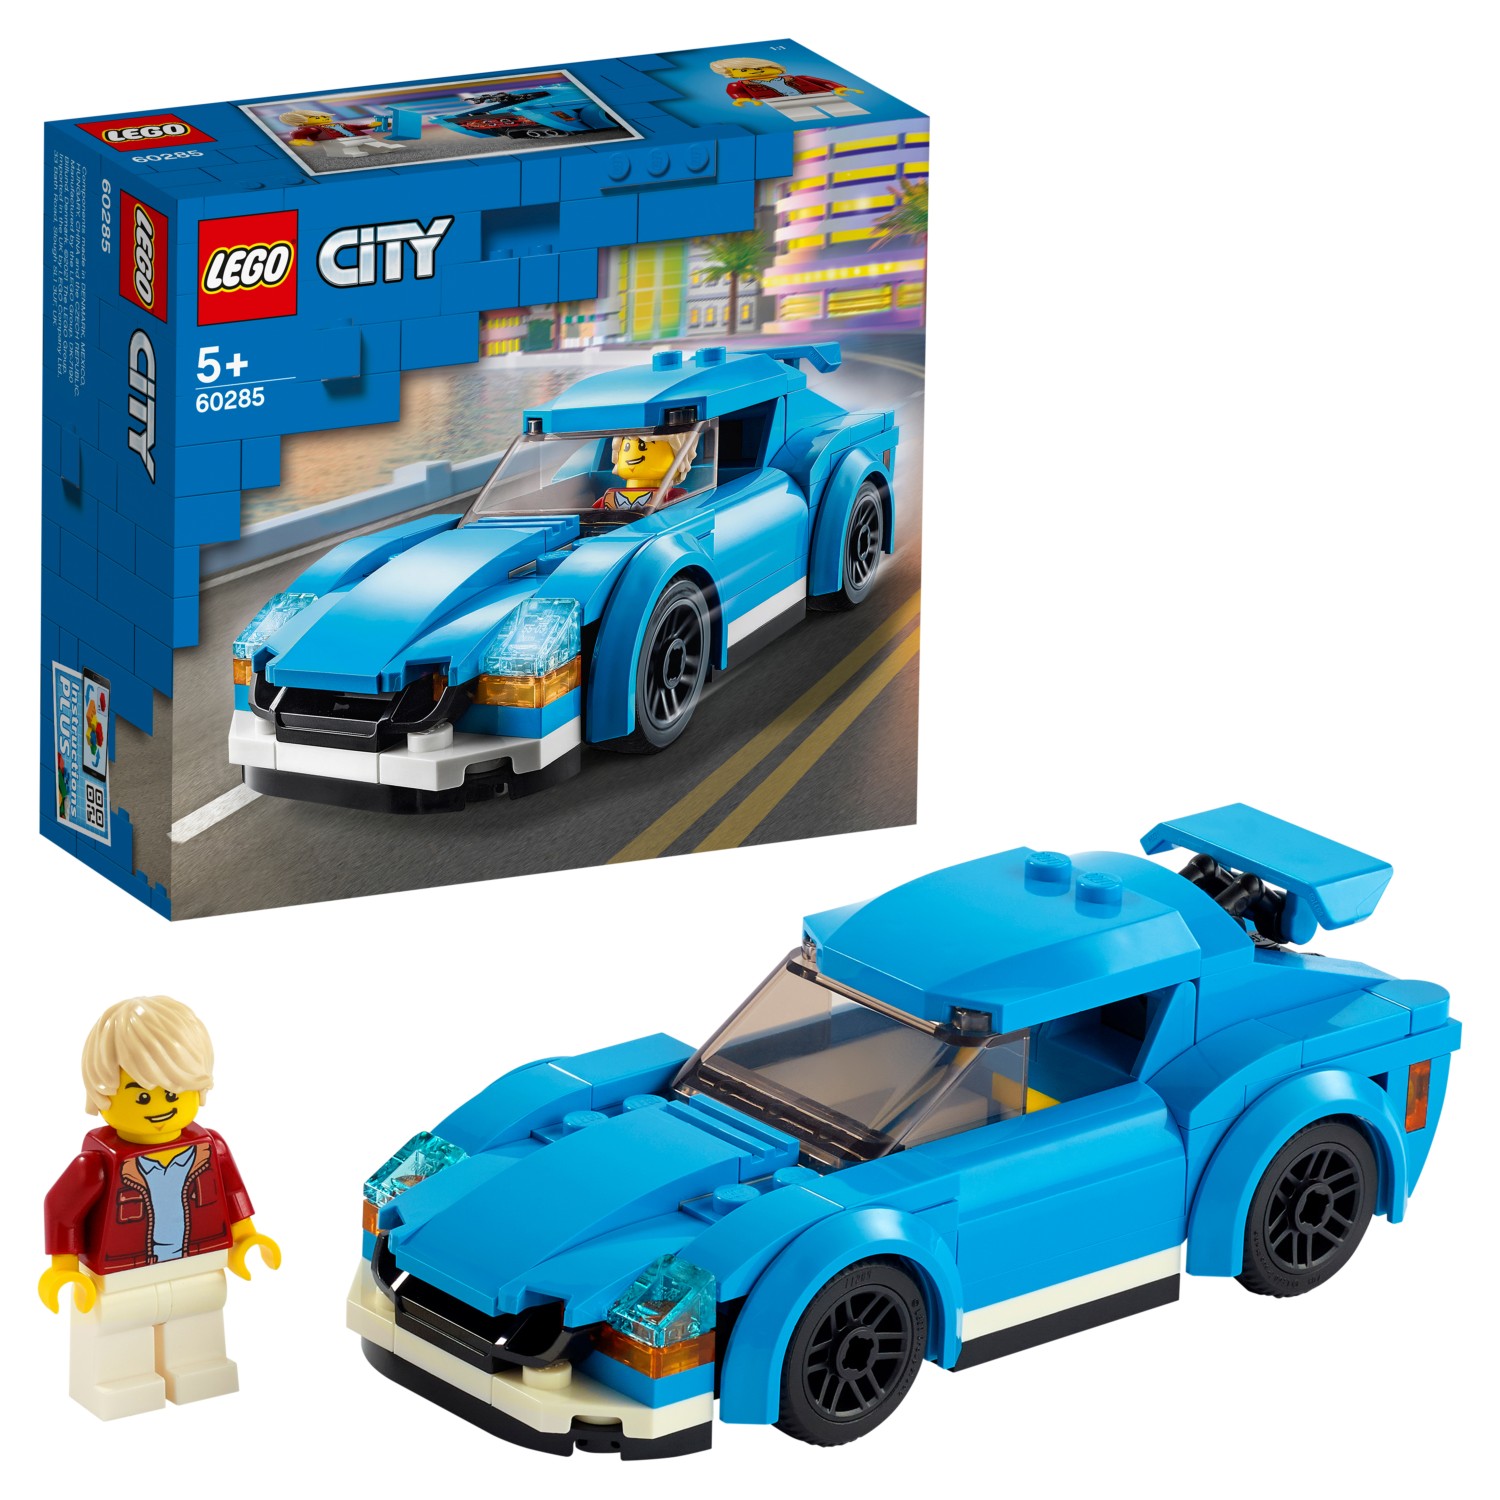 Конструктор LEGO City Great Vehicles 60285 Спортивный автомобиль конструктор lego city great vehicles паром 60119